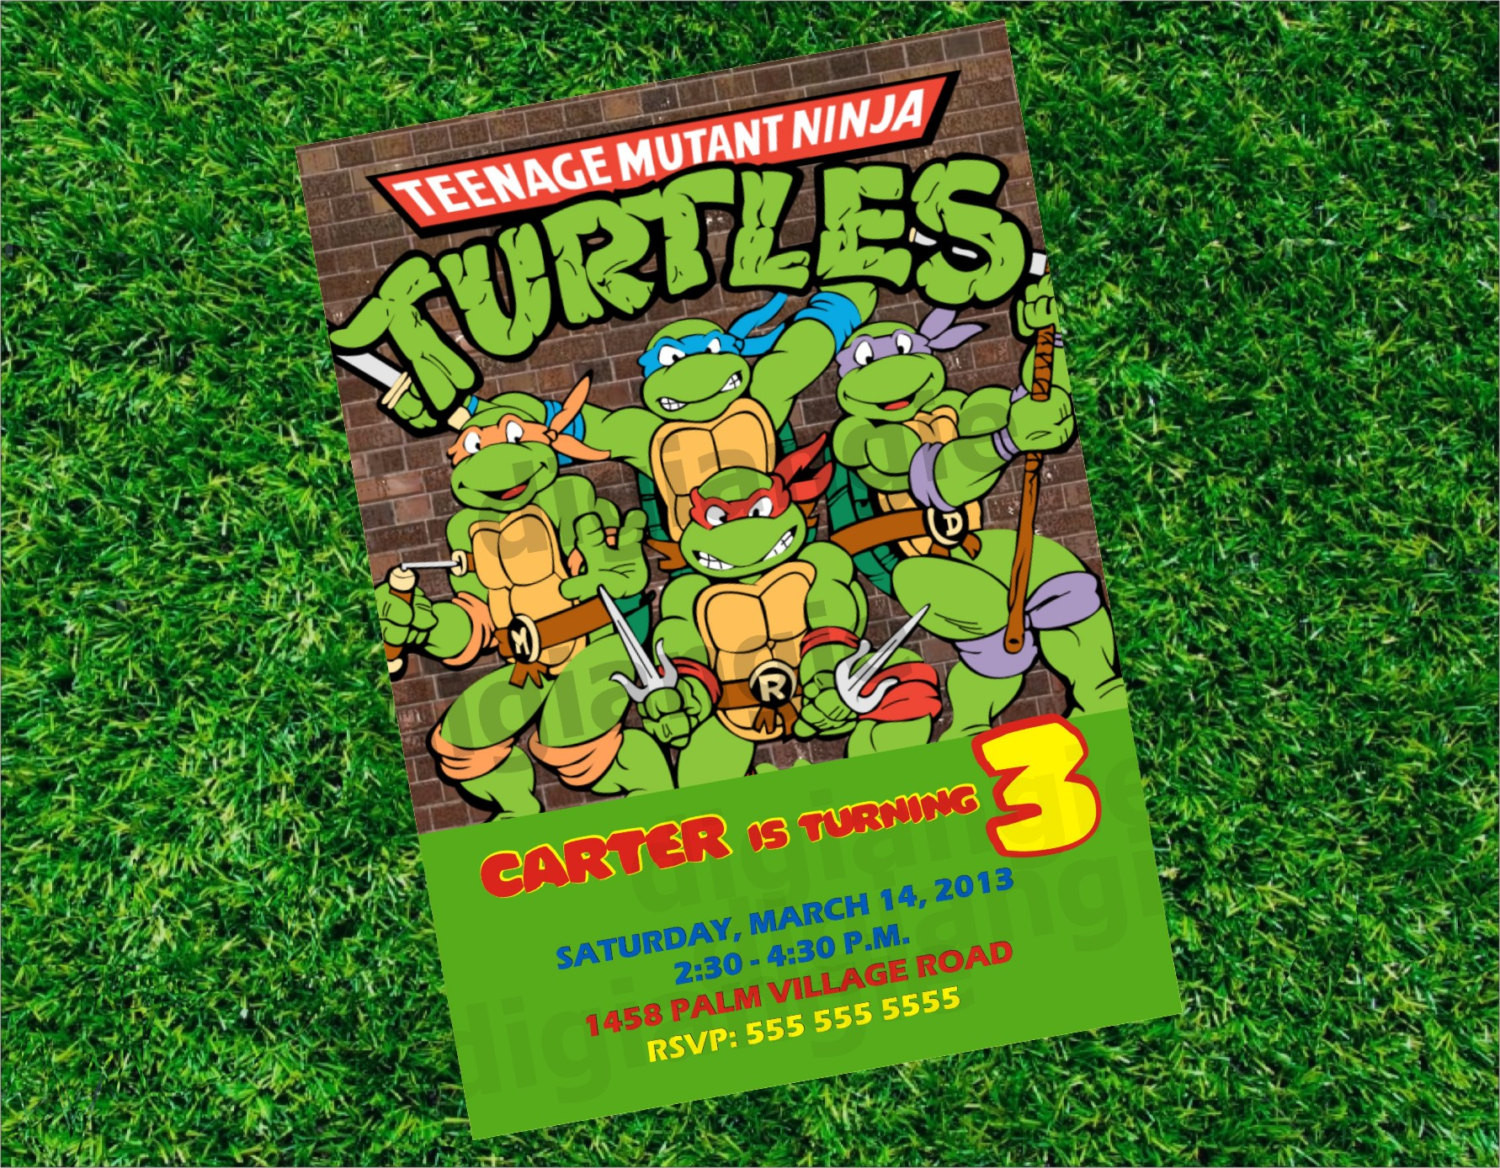 Best ideas about Ninja Turtle Birthday Invitations
. Save or Pin Teenage Mutant Ninja Turtles Birthday Invitations Ninja Now.